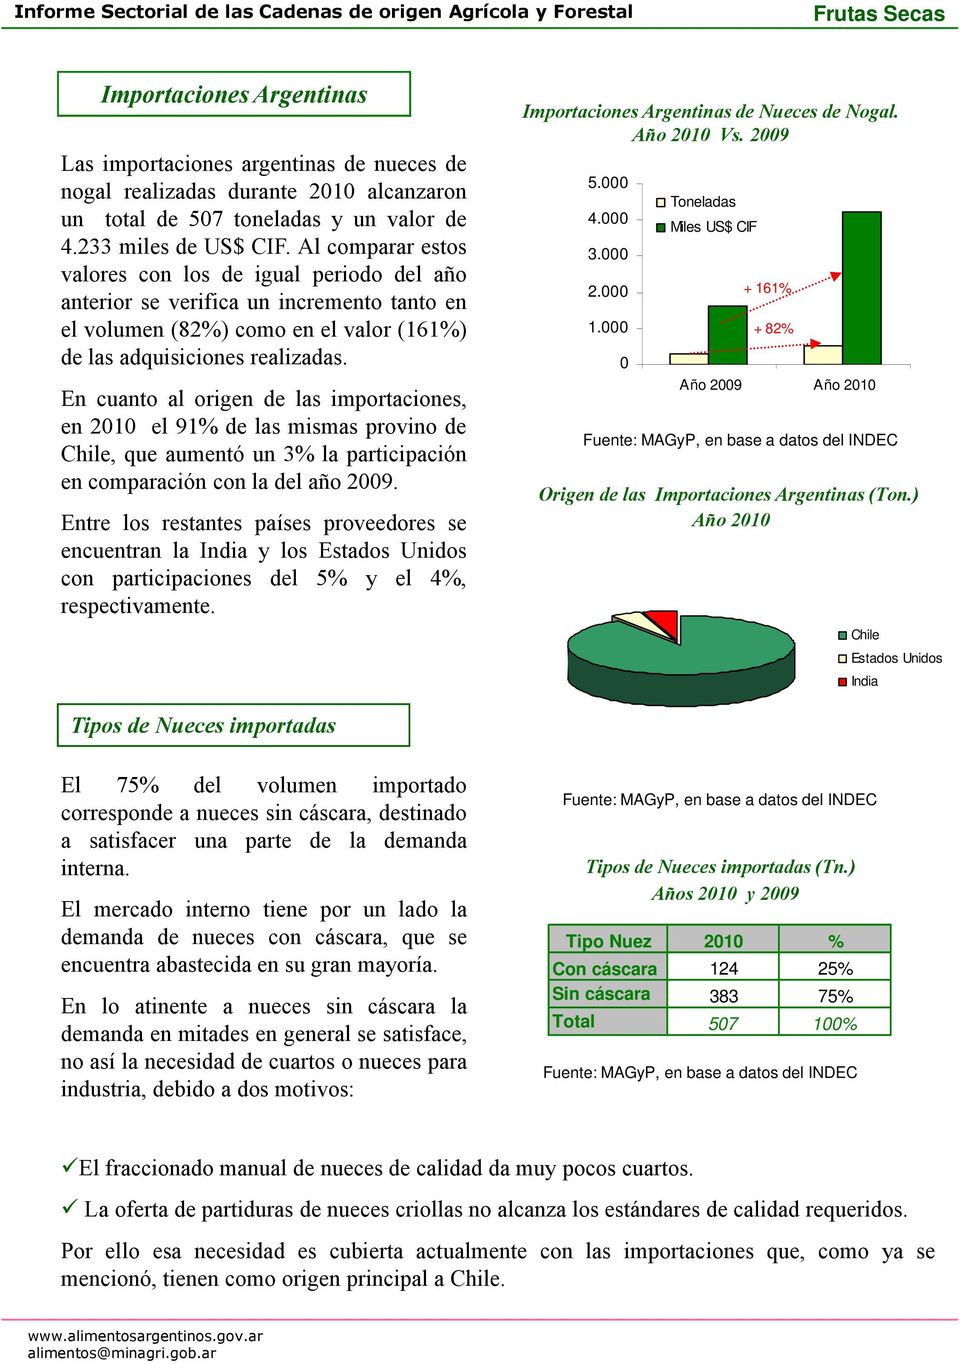 En cuanto al origen de las importaciones, en 21 el 91% de las mismas provino de Chile, que aumentó un 3% la participación en comparación con la del año 29.